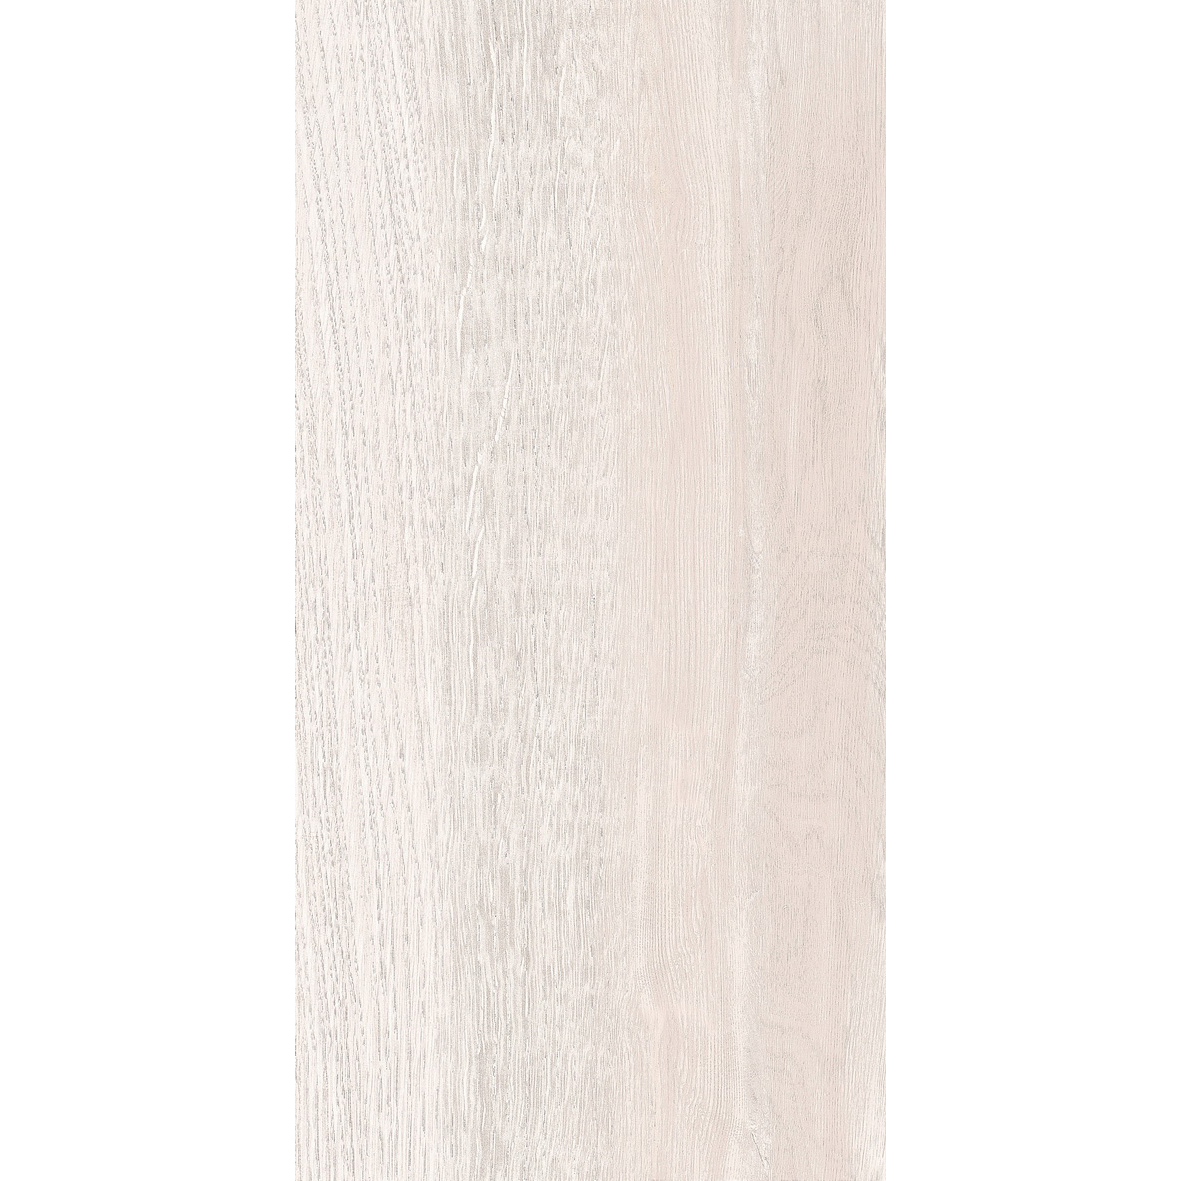 фото Плитка estima modern wood mw02 30,6x60,9 см